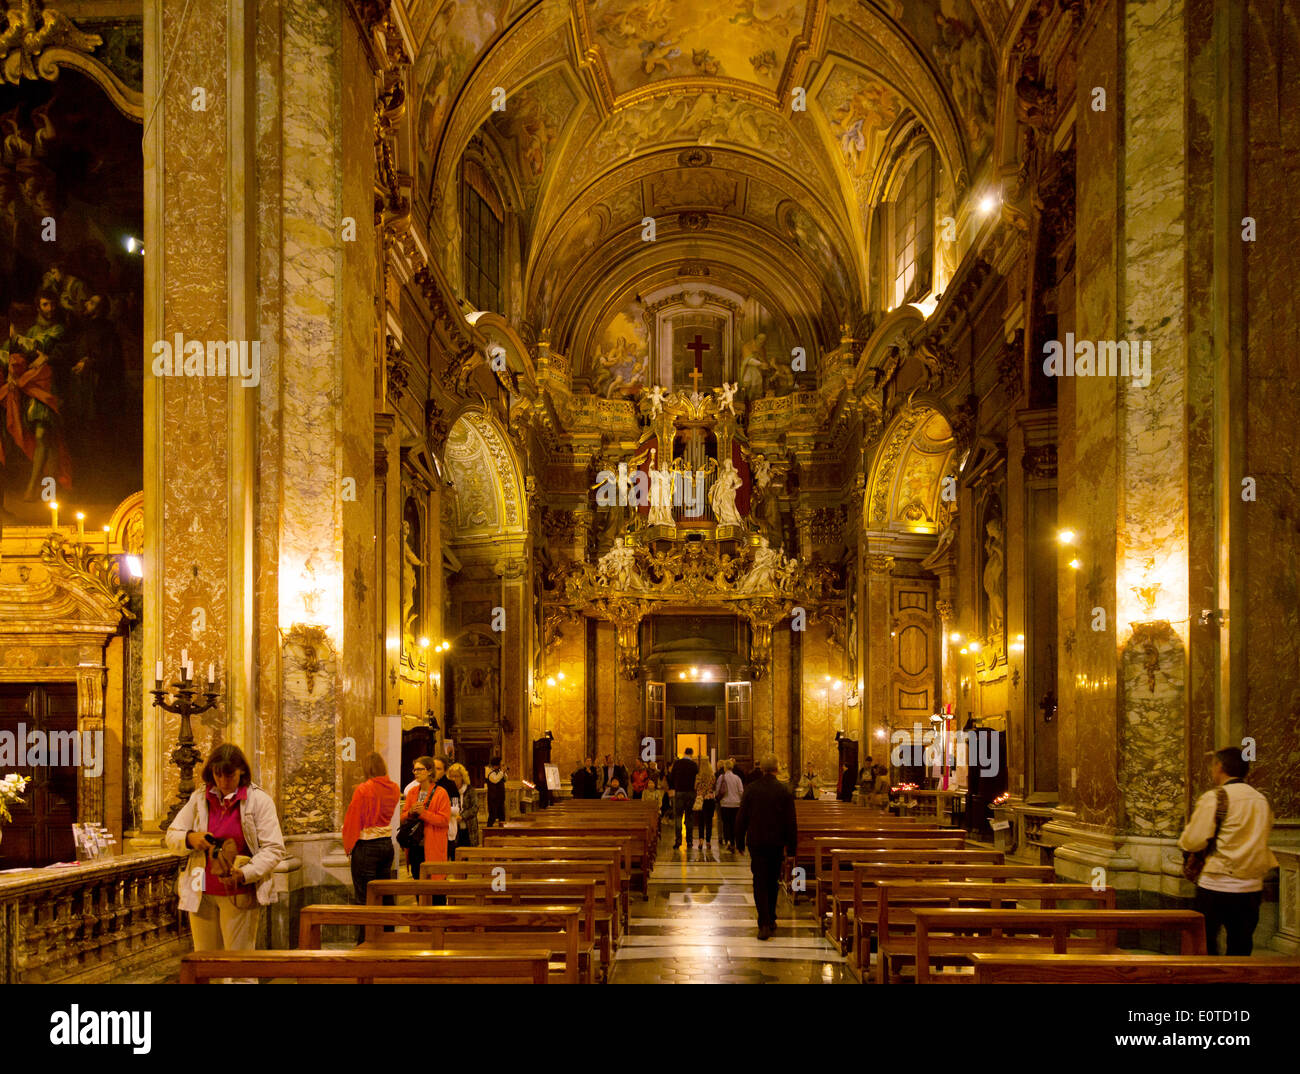 L'intérieur de l'église de Sainte Marie Madeleine, (Santa Maria Maddalena ) Rome Italie Europe Banque D'Images